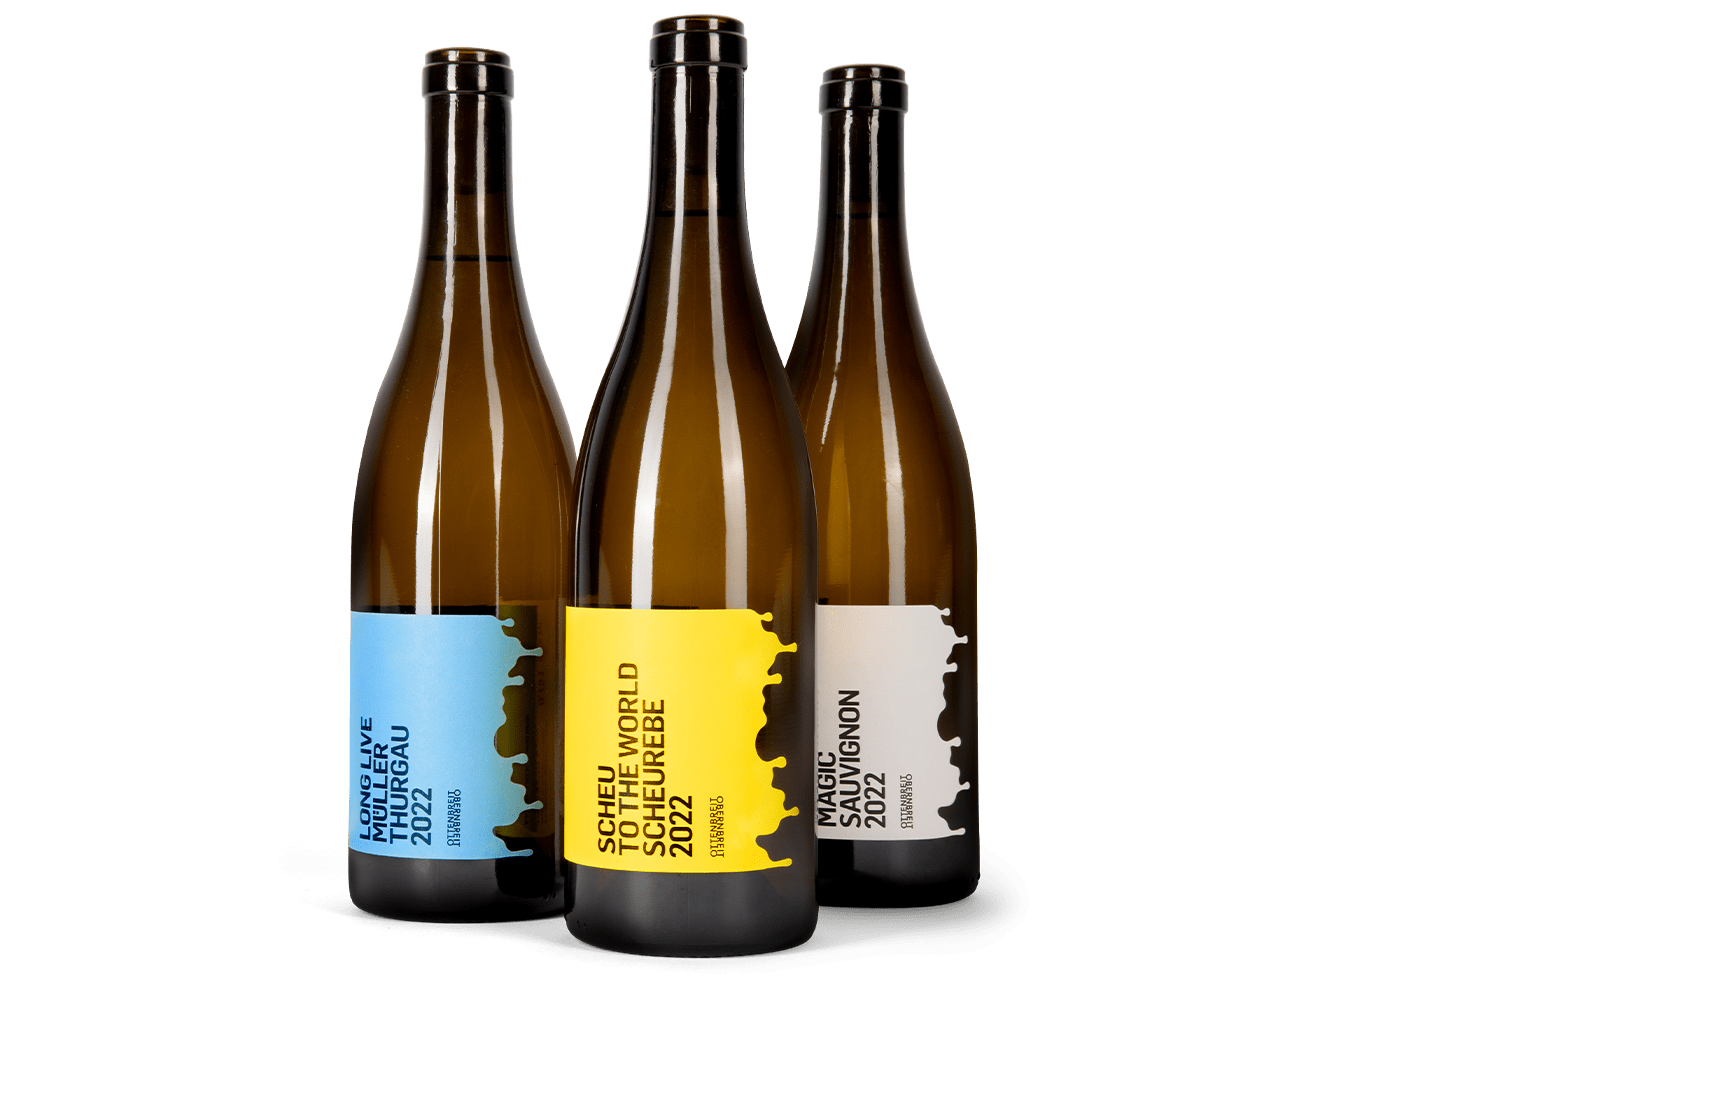 Drei Weinflaschen vom Weingut Ottenbreit